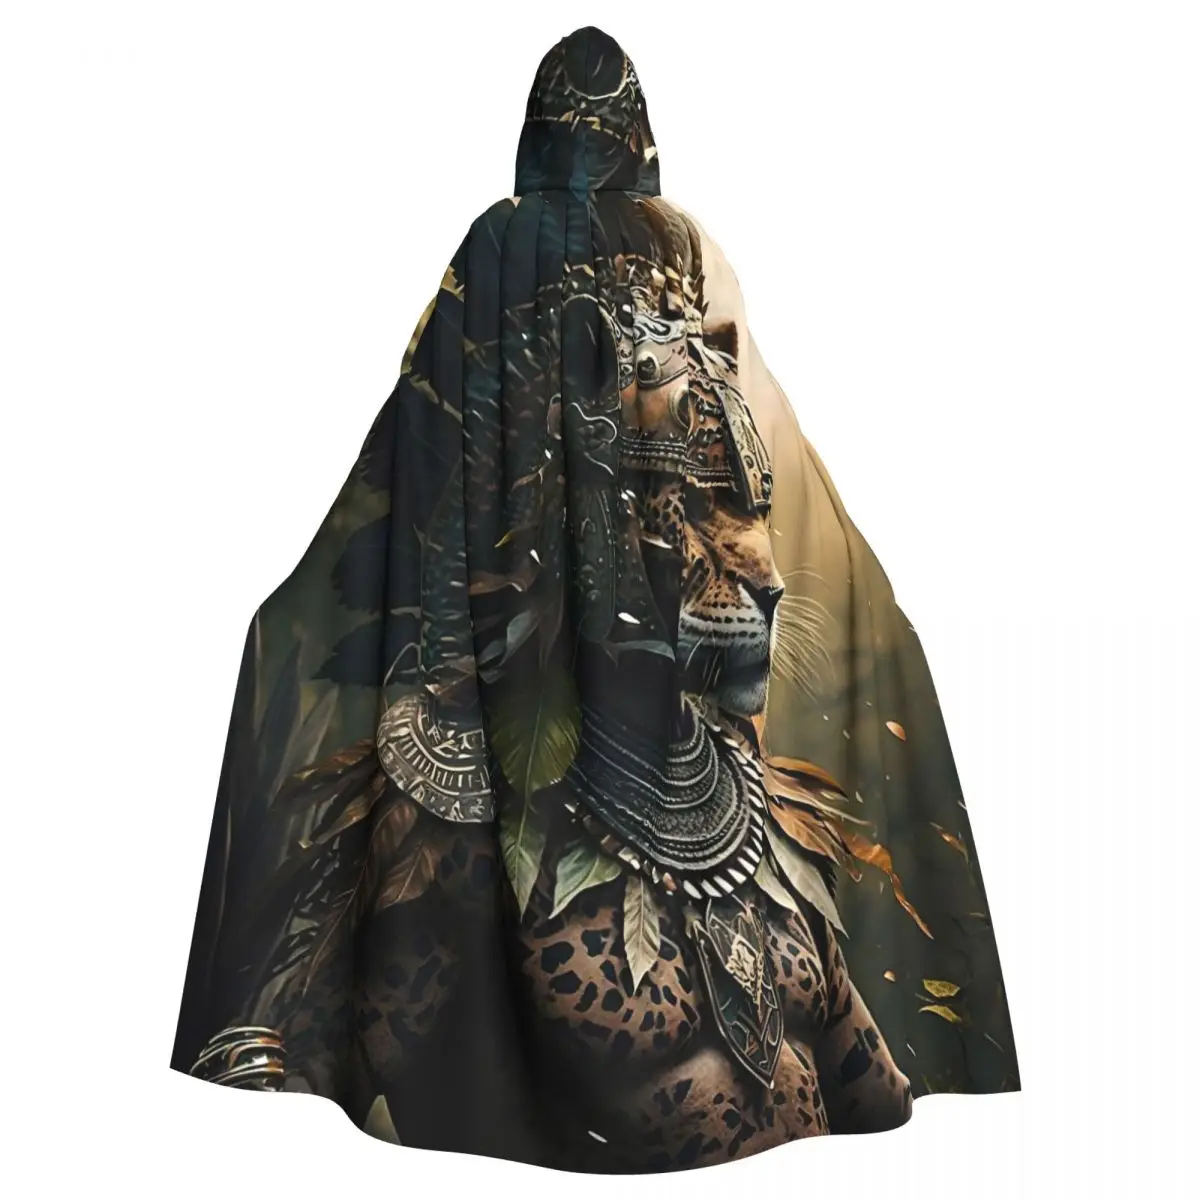 

Jaguar Aztec Warrior Hooded Cloak Halloween Party Cosplay Woman Men Adult Long Witchcraft Robe Hood